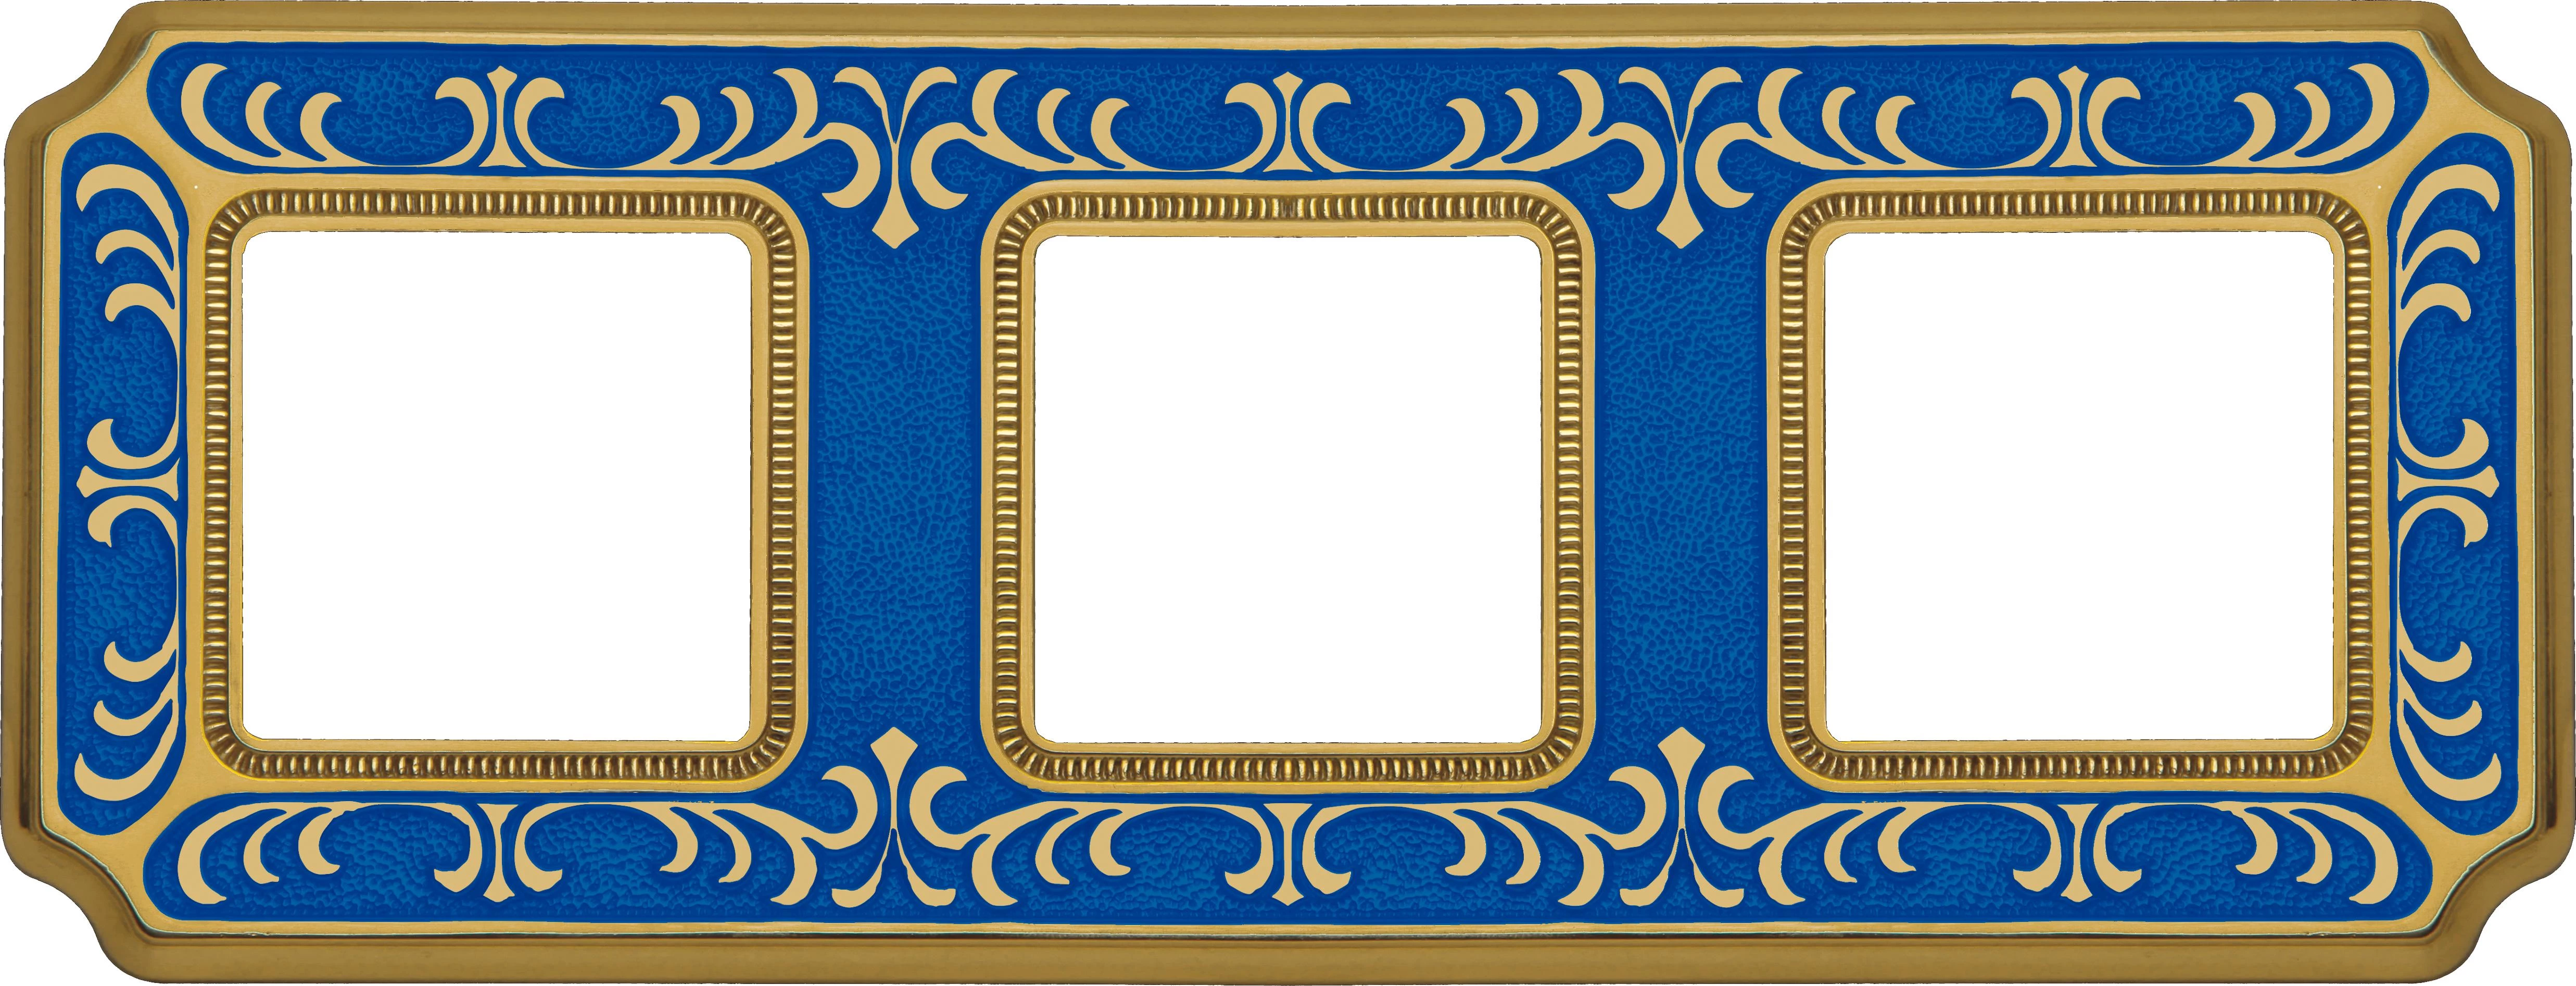  артикул FD01353AZEN название Рамка 3-ая (тройная), цвет Голубой сапфир, Siena, Fede